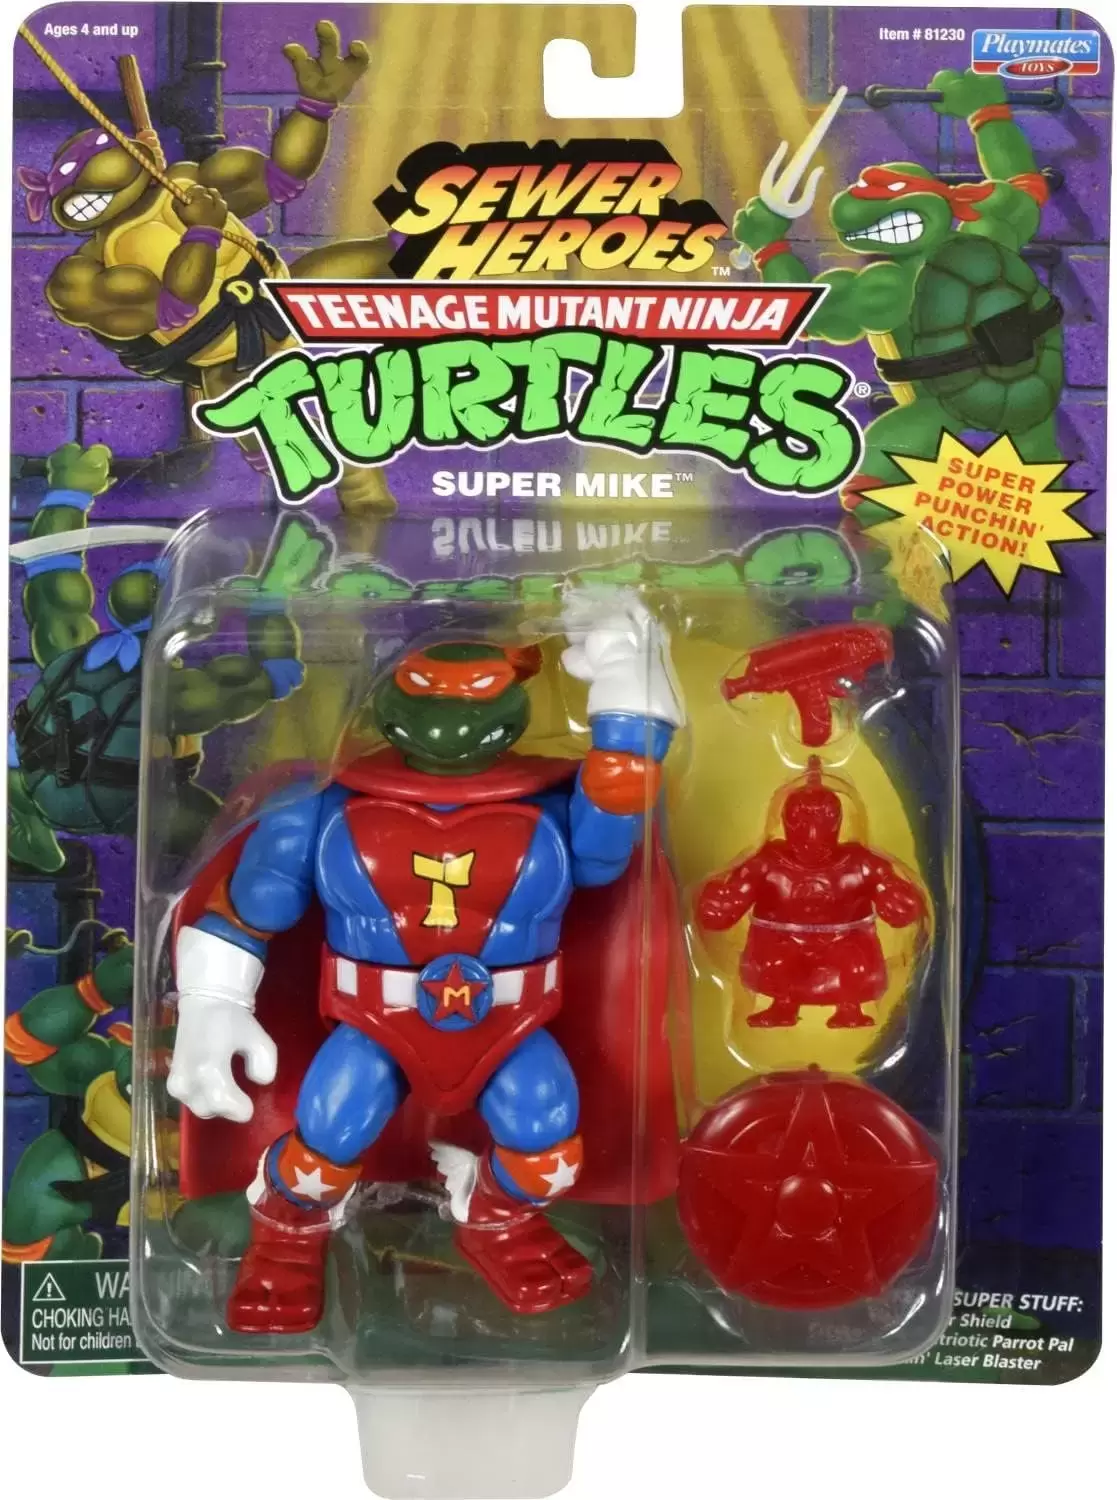 Vintage Teenage Mutant Ninja Turtles (TMNT) - Sewer Heroes - Super Mike